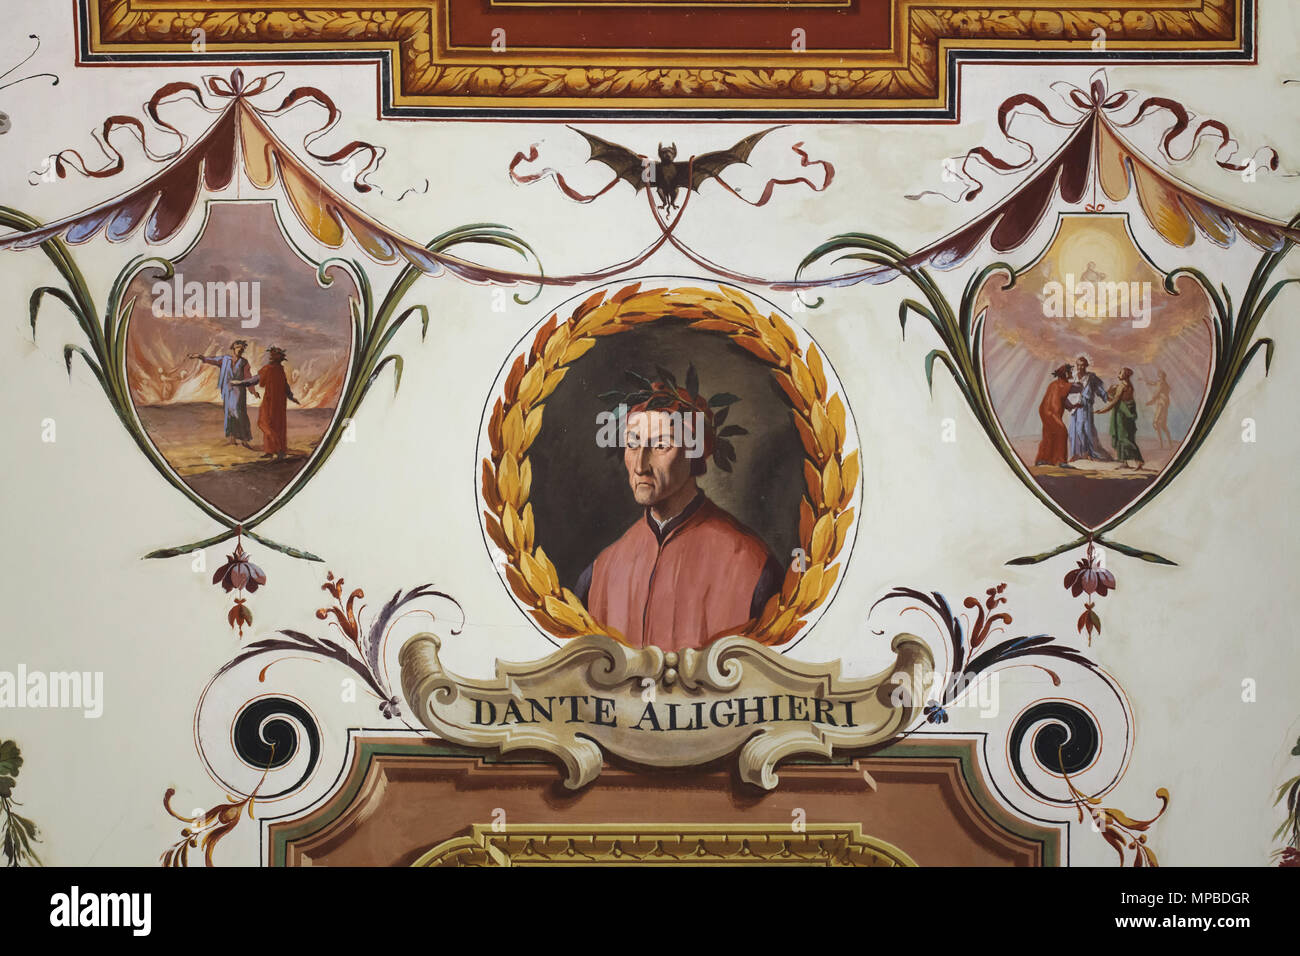 Italienische mittelalterlichen Dichter Dante Alighieri im Deckenfresko der Vasari Korridor in den Uffizien (Galleria degli Uffizi) in Florenz, Toskana, Italien dargestellt. Stockfoto